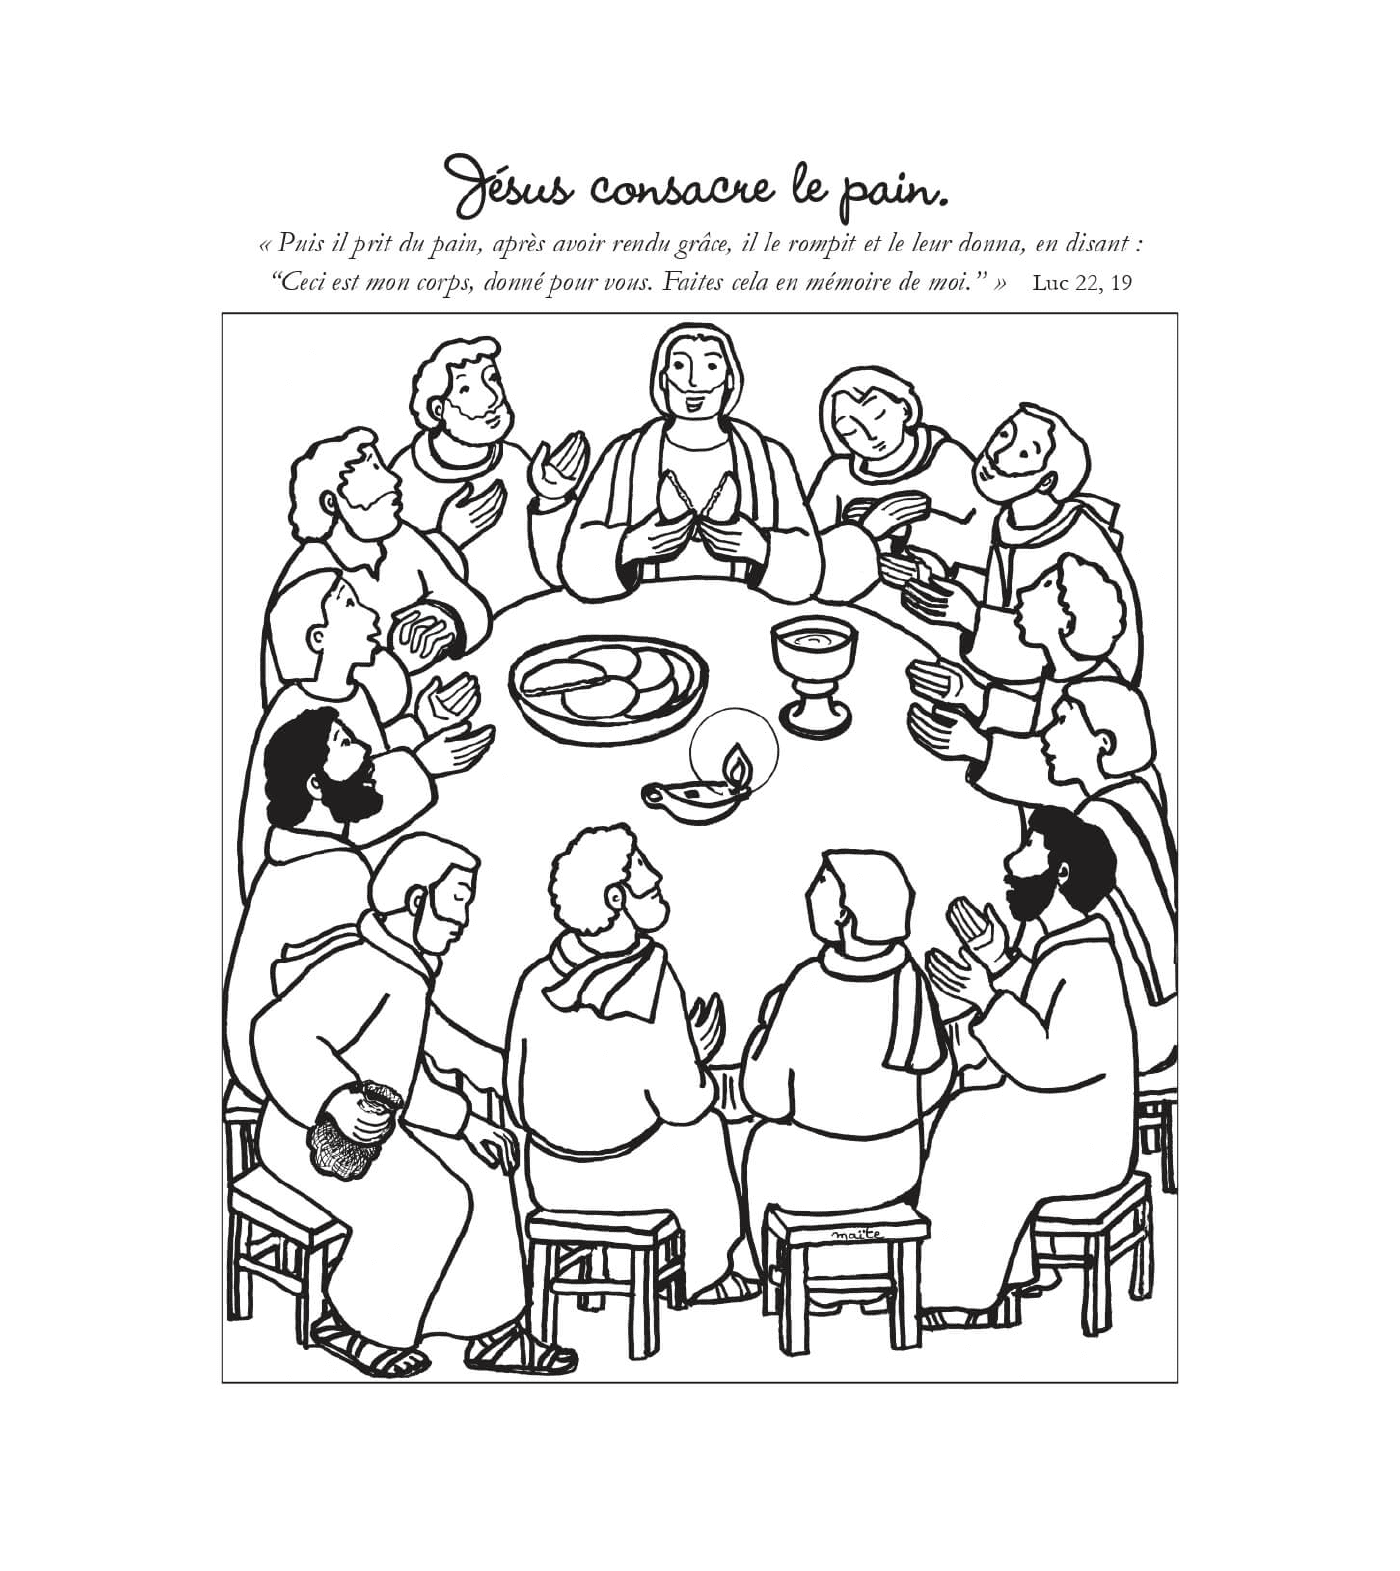   Jésus consacre le pain, groupe de personnes assises autour d'une table 